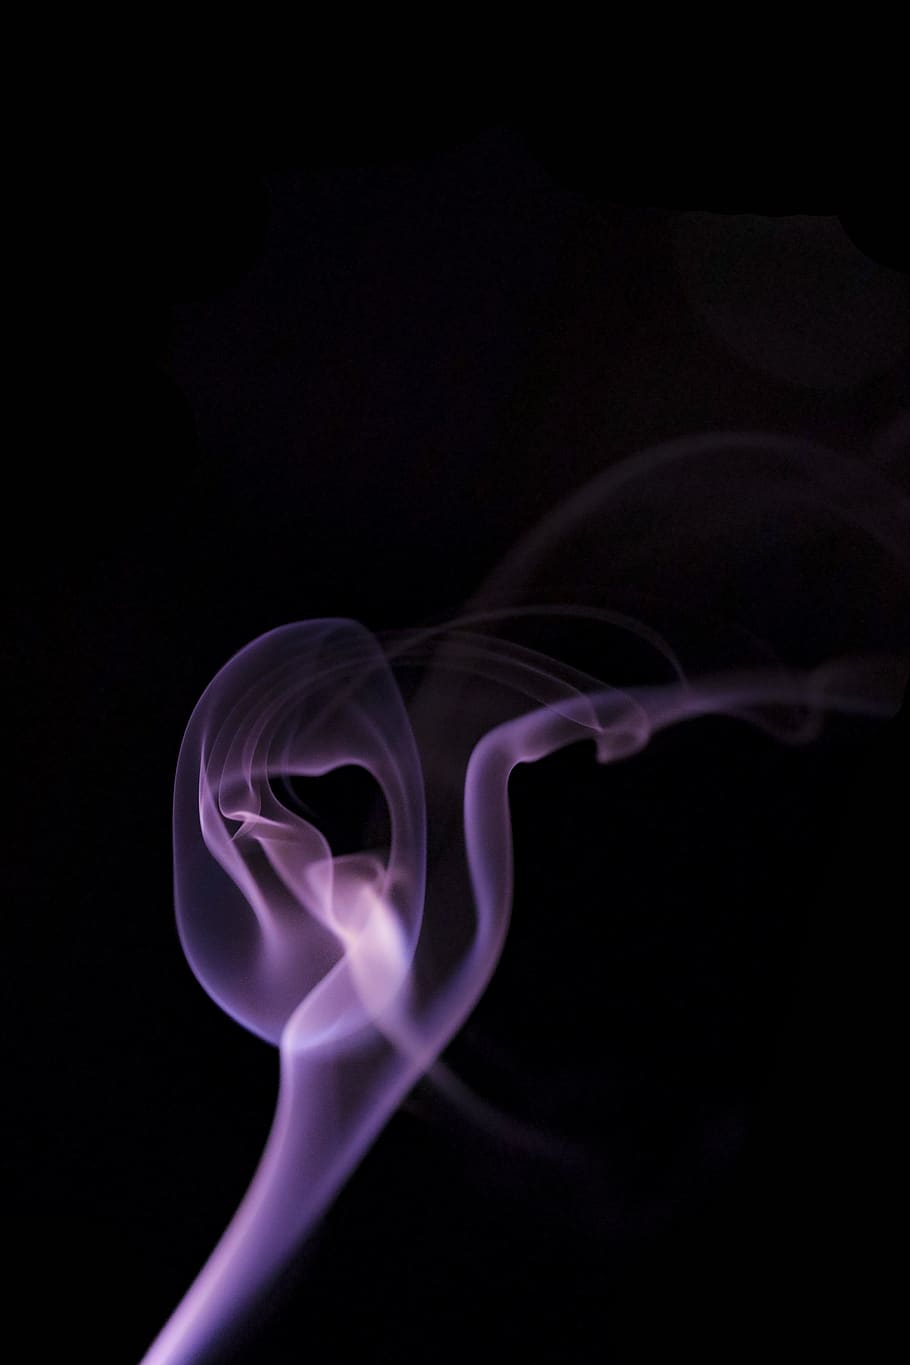 violeta, morado, humo, lavanda, fuego, fondo negro, tiro del estudio, movimiento, dentro, humo - estructura física